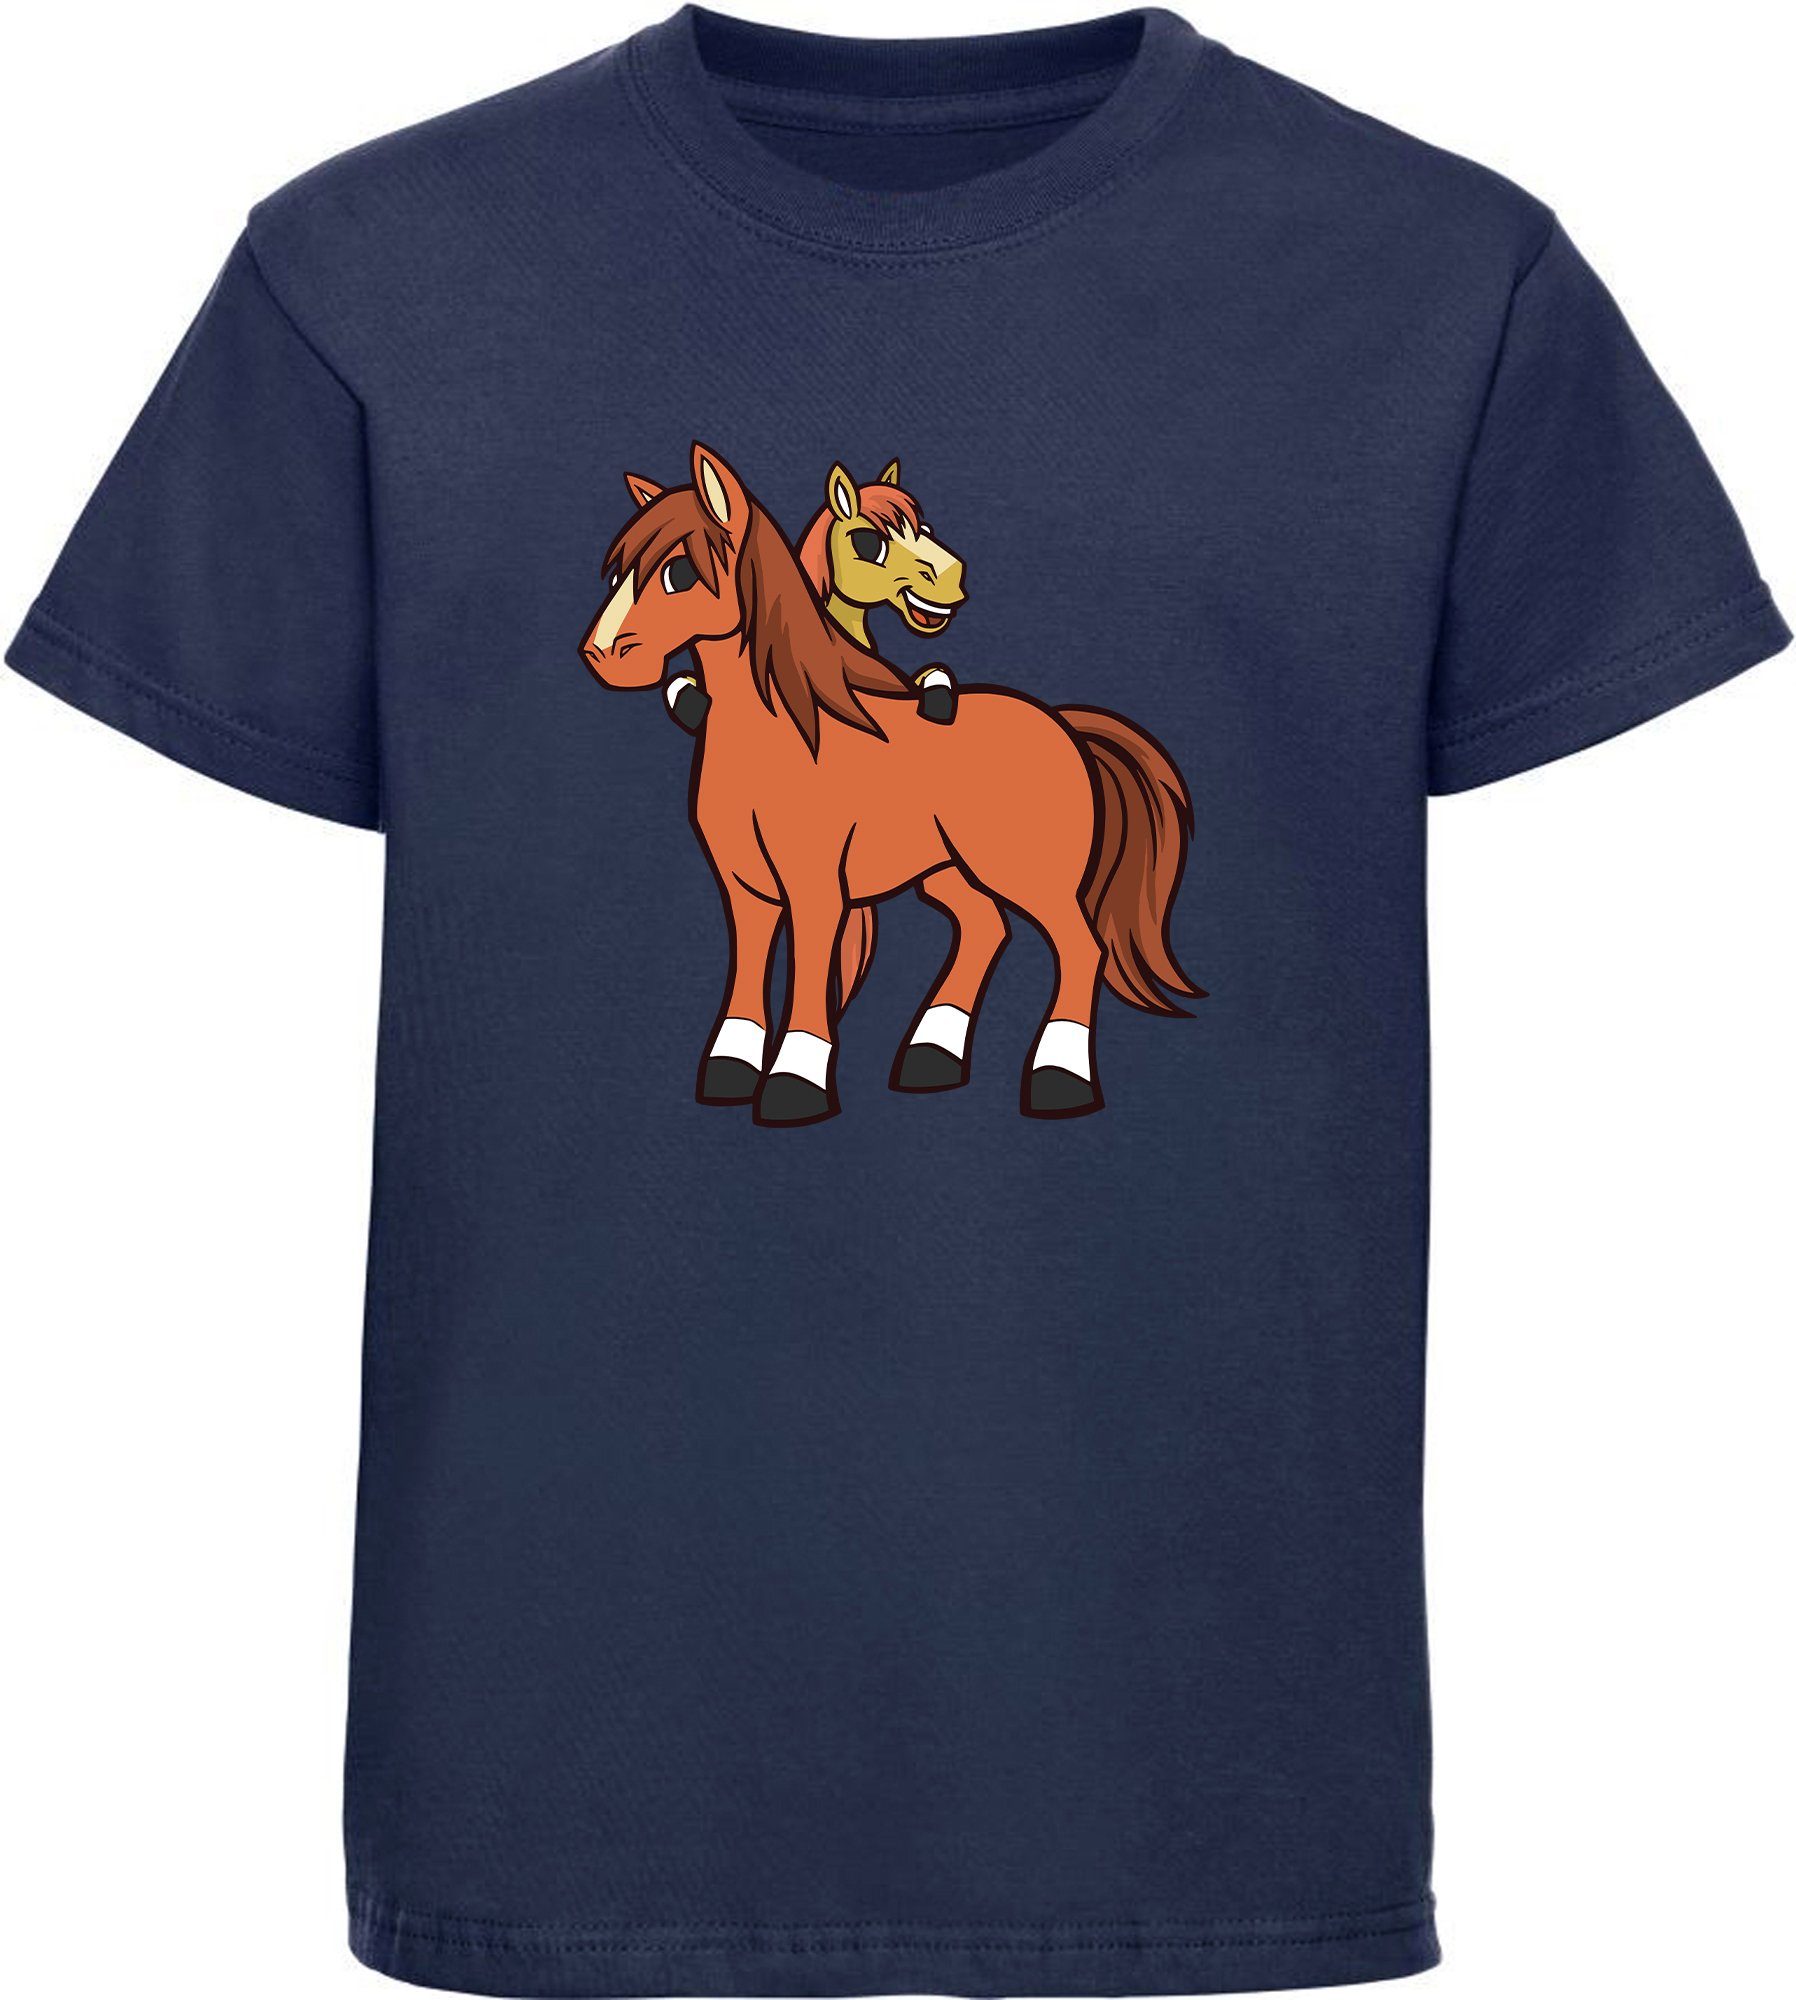 MyDesign24 T-Shirt Kinder Pferde Print Shirt bedruckt - 2 cartoon Pferde Baumwollshirt mit Aufdruck, i251 navy blau